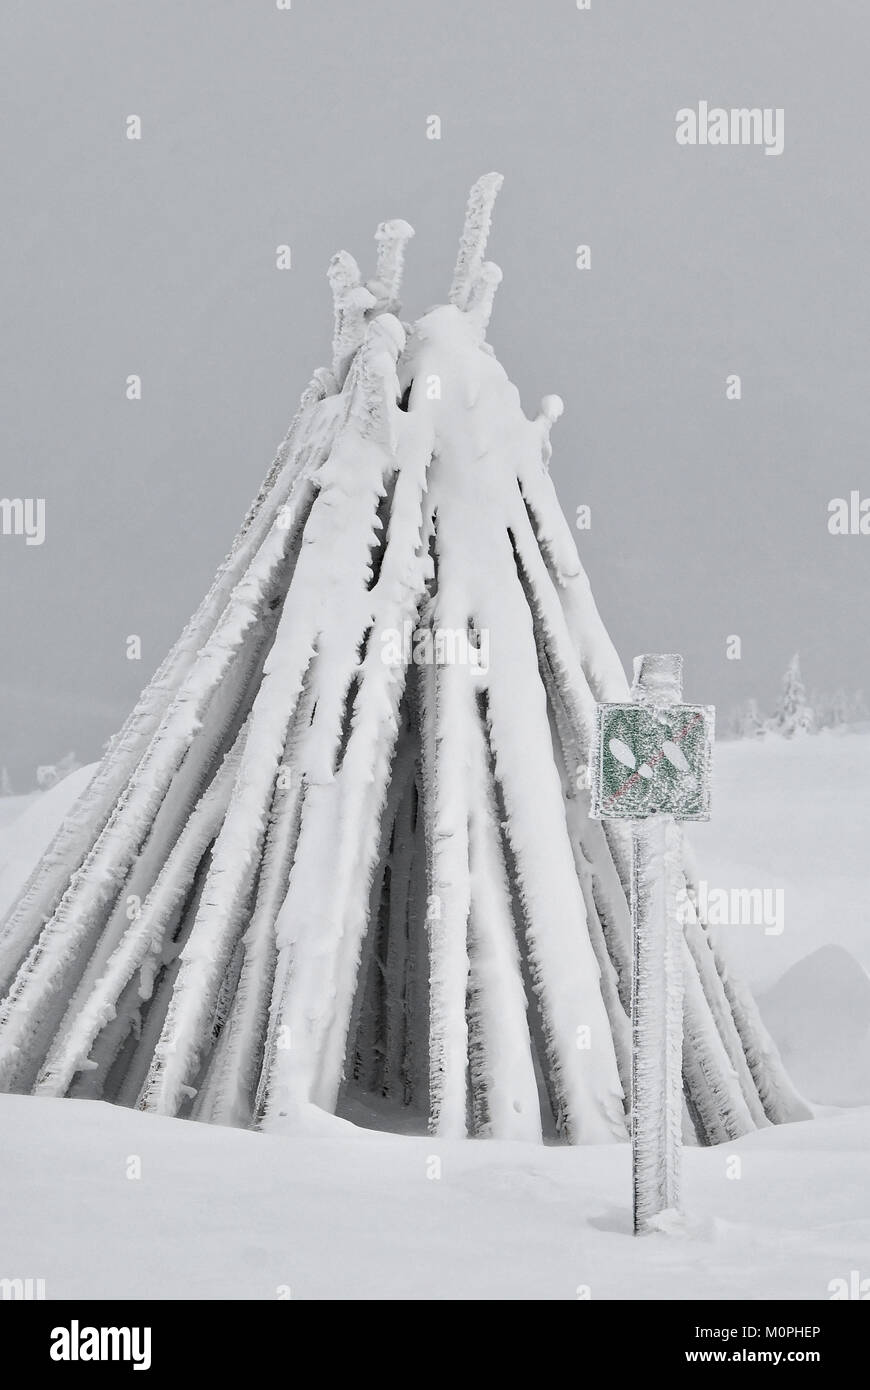 Nessun segno di passaggio nella parte anteriore dei pali di legno ricoperta di ghiaccio e neve Foto Stock